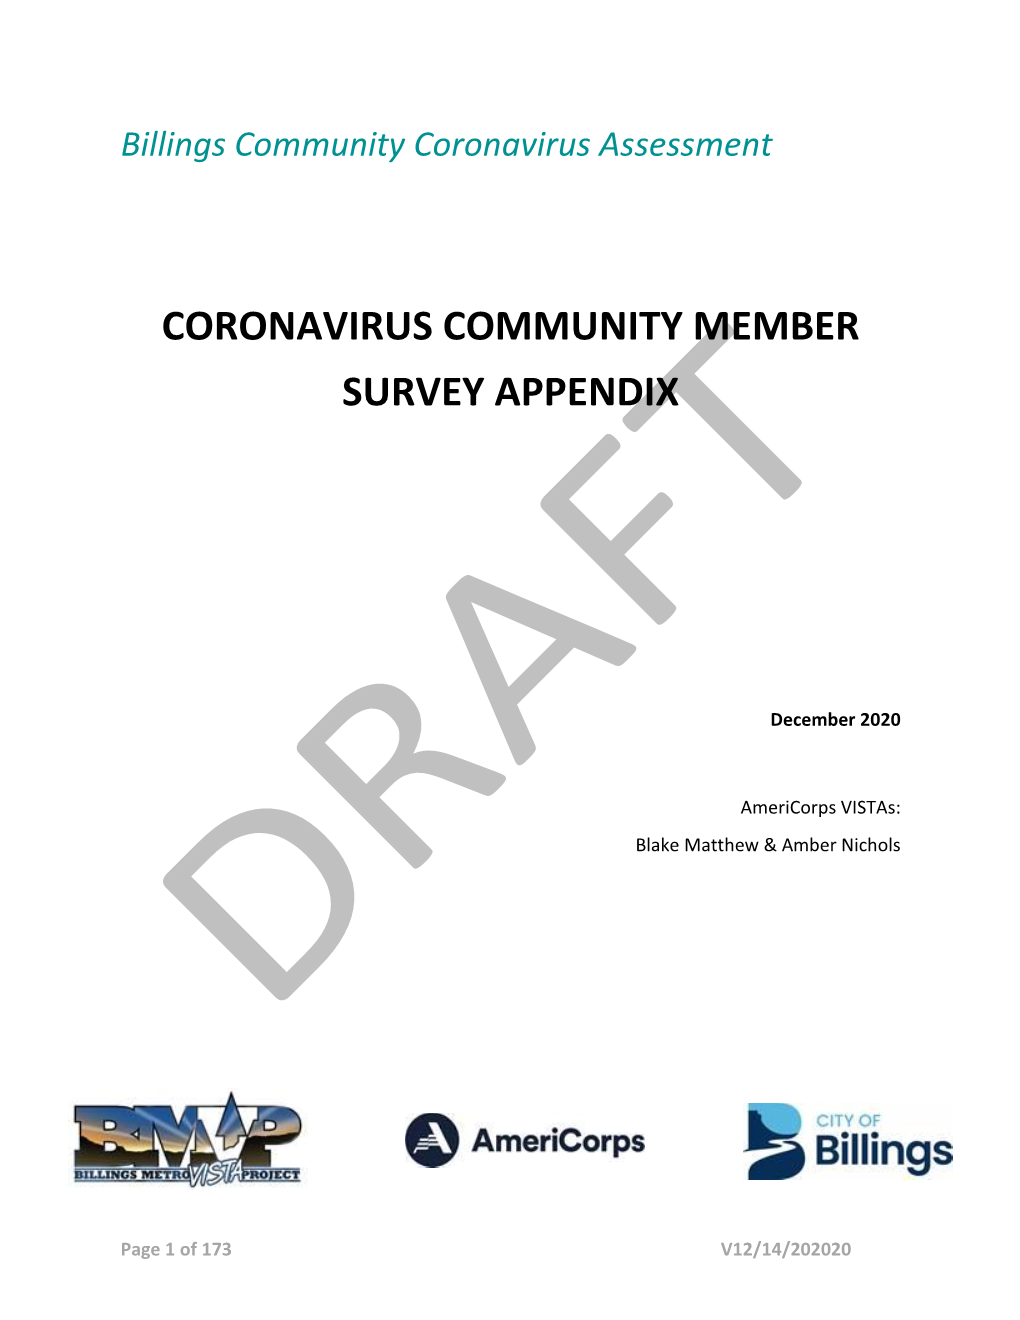 Coronavirus Community Member Survey Appendix